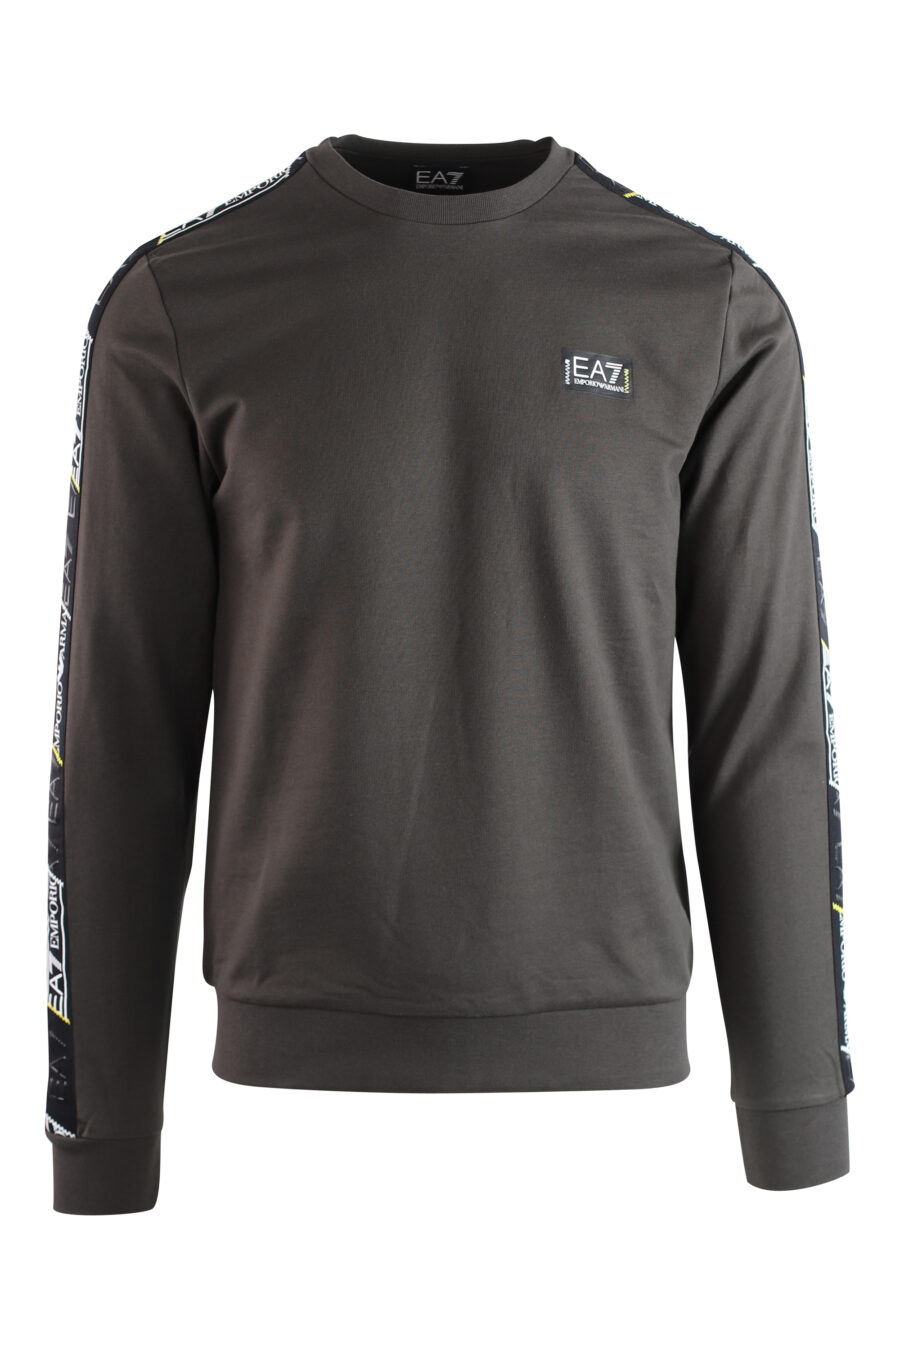 Graues Sweatshirt mit Bandlogo an den Ärmeln und schwarzem Minilogue - IMG 3751